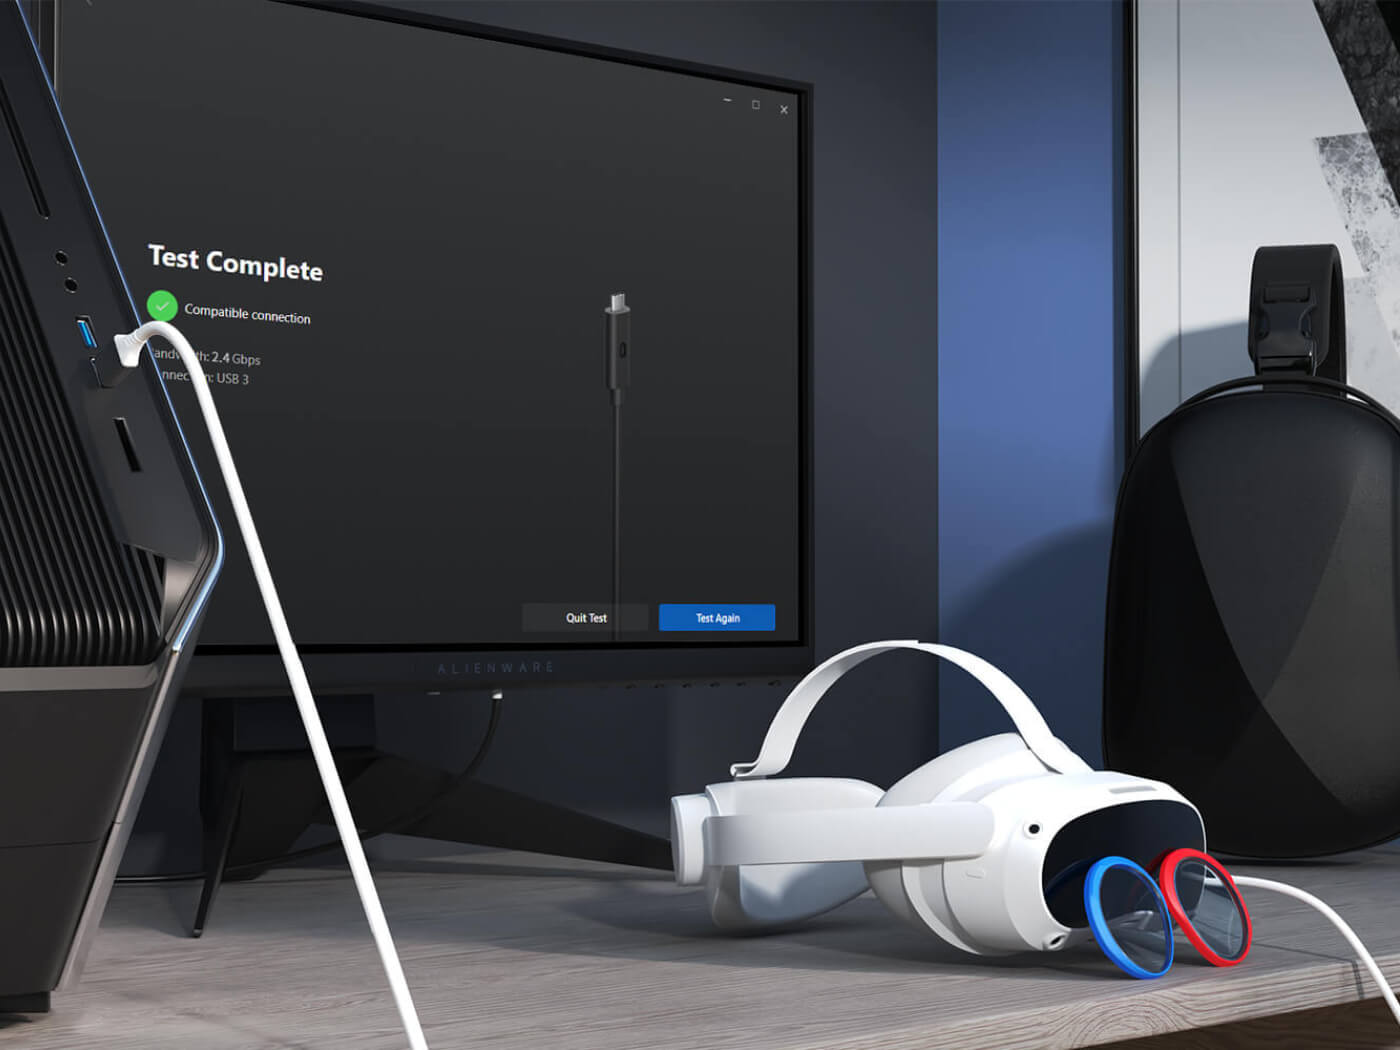 Pico 4 VR Review: A True Quest 2 Competitor - Tech Advisor